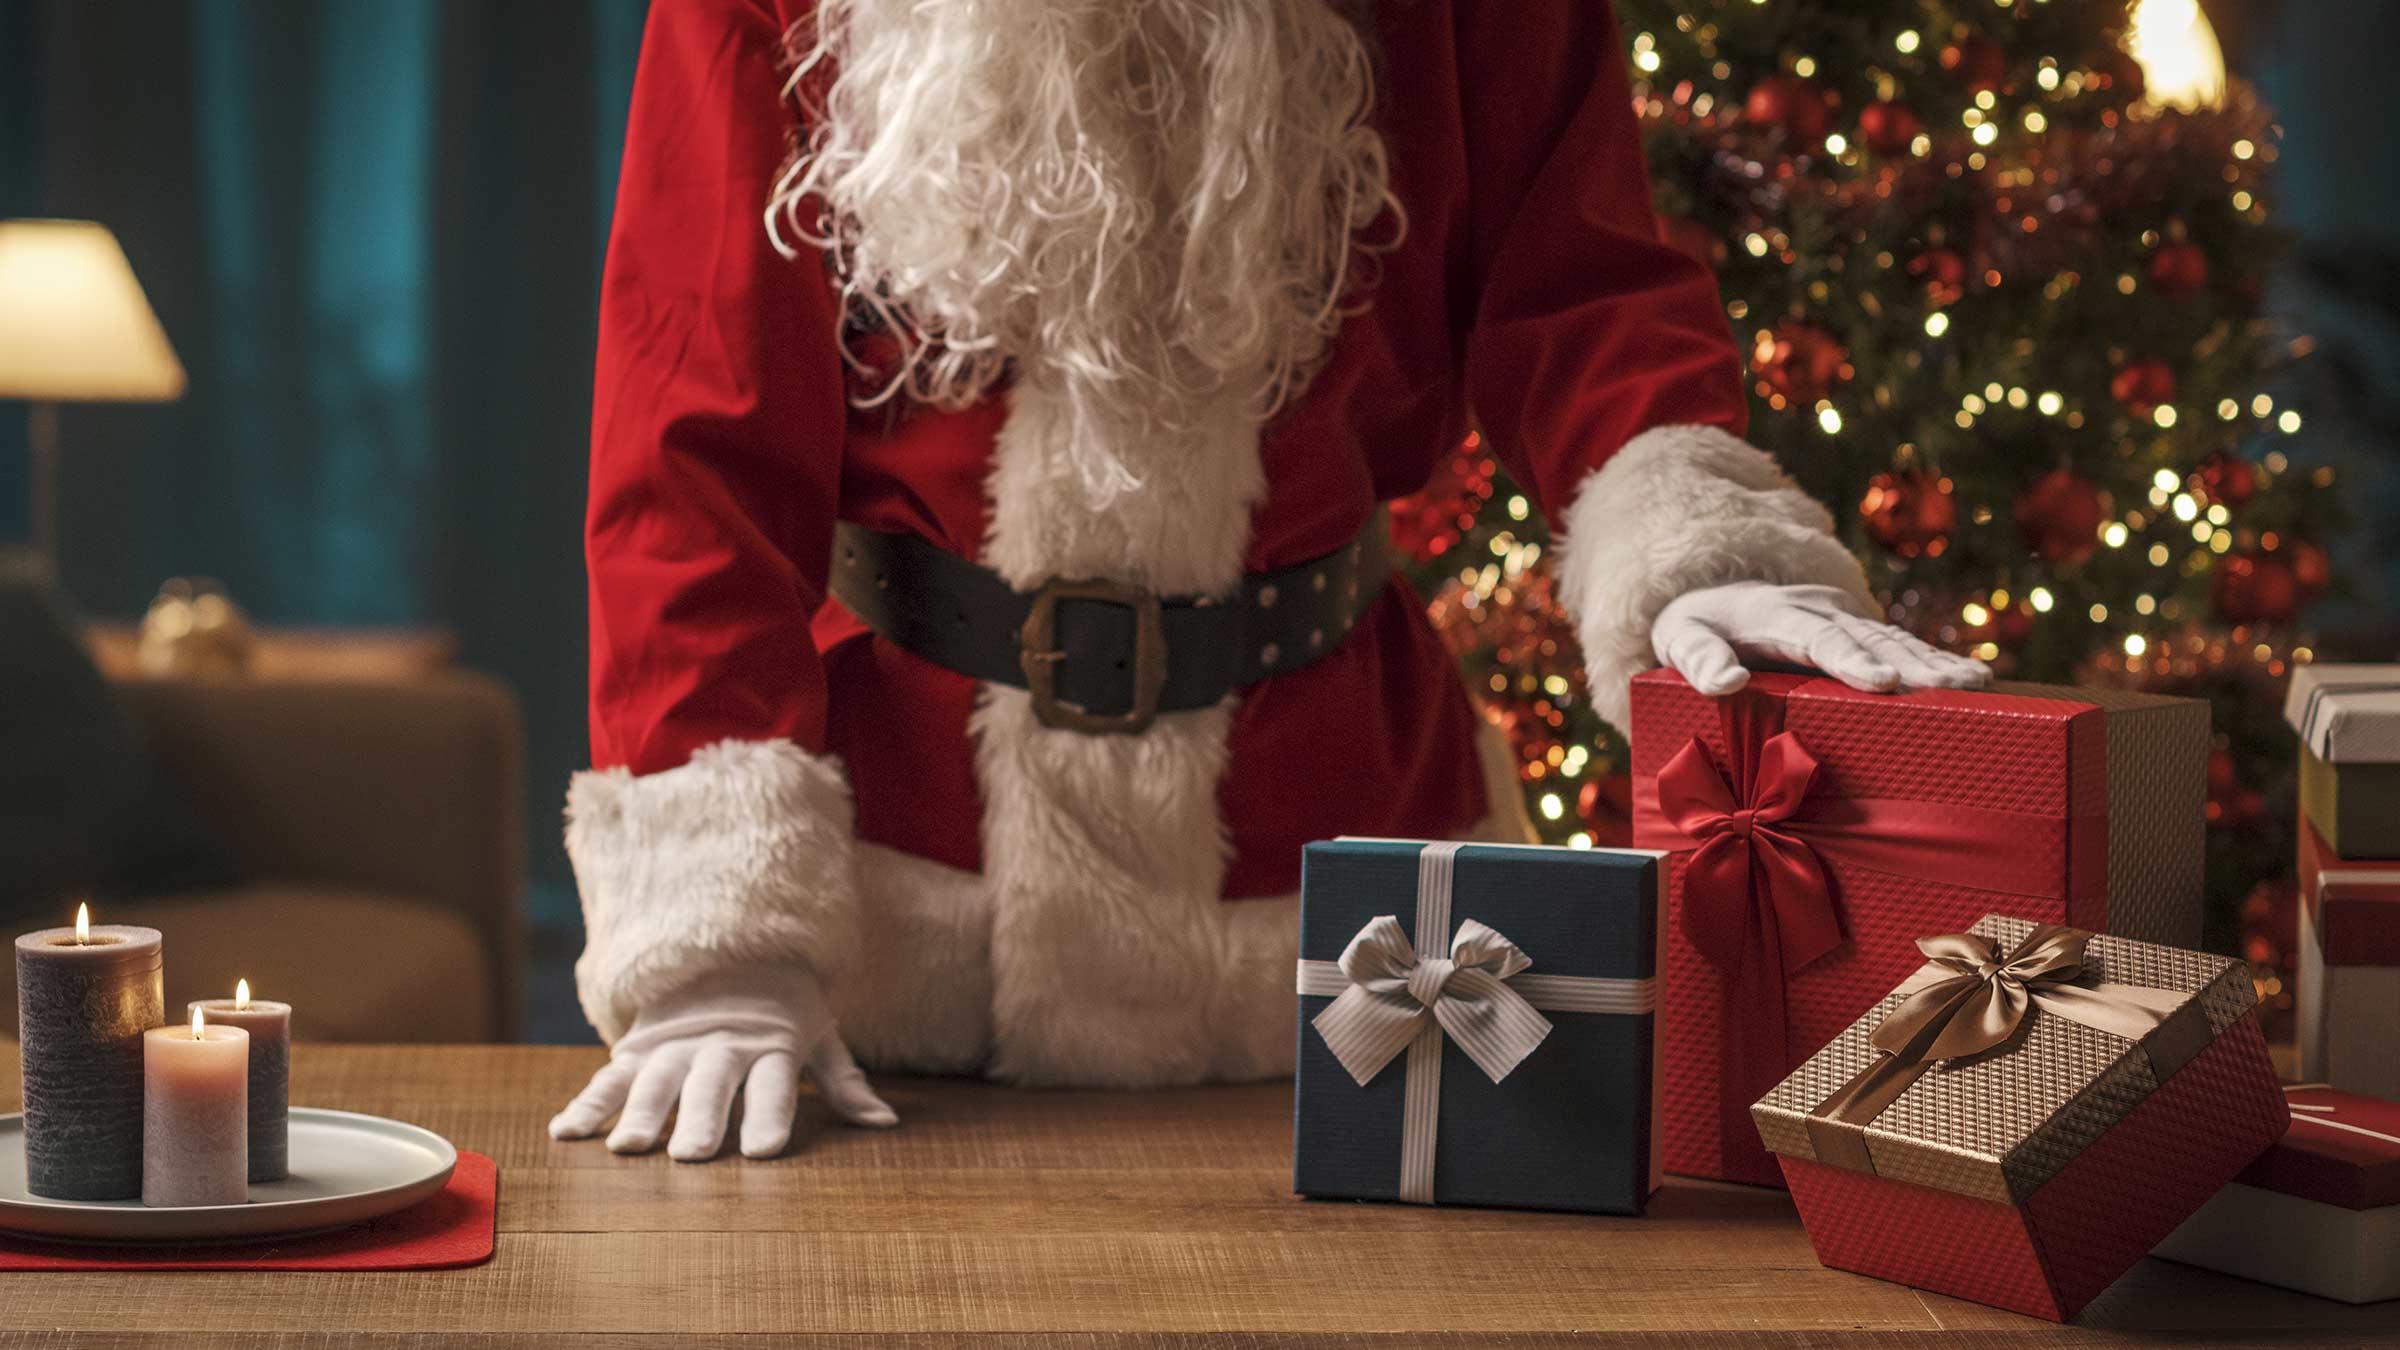 Santa Claus preparing Christmas gifts